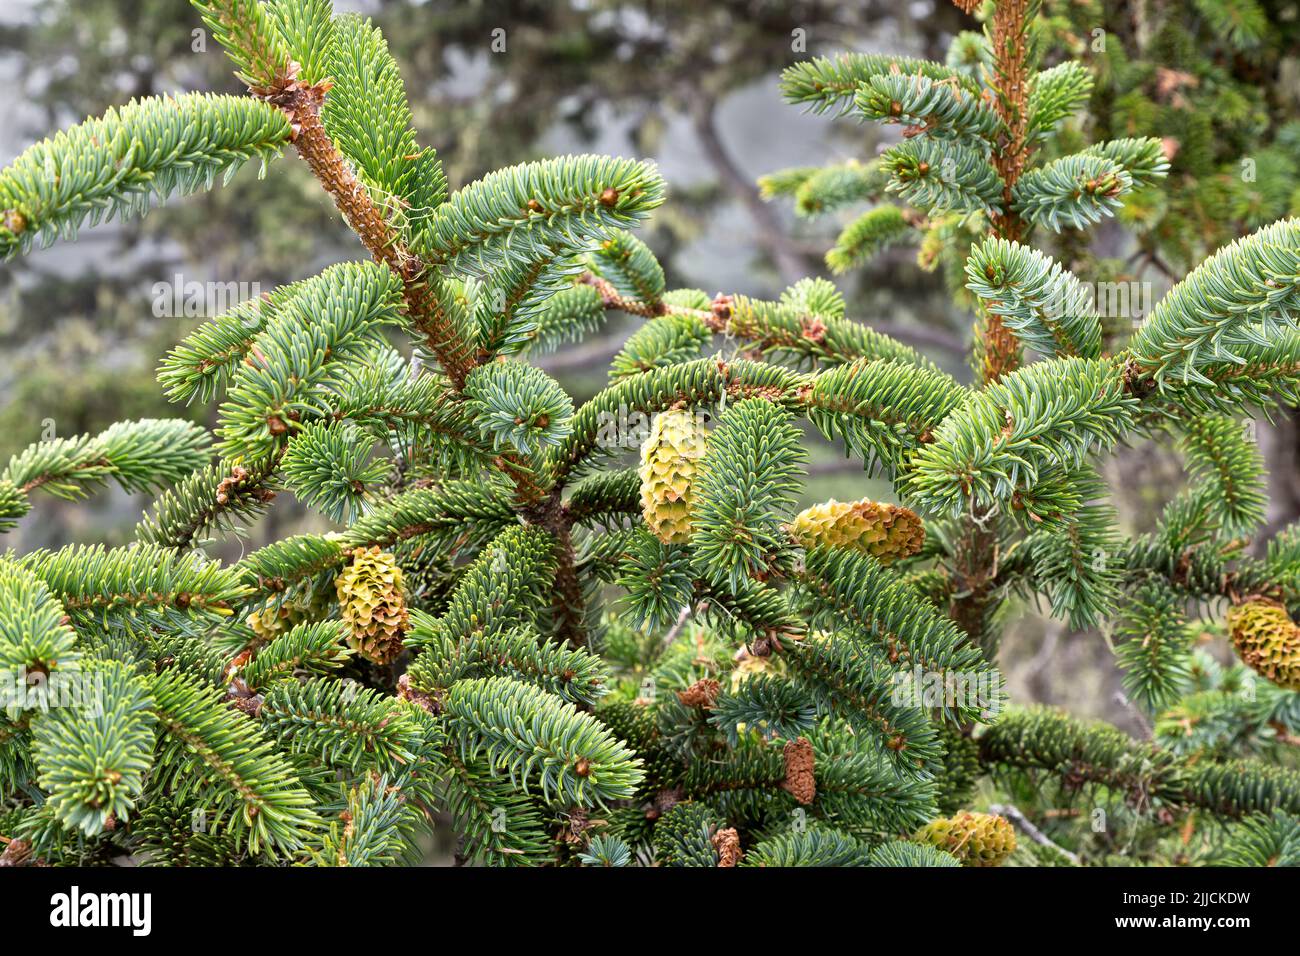 Épinette de Sitka 'Picea sichensis', vert persistant, côte nord de la Californie. Banque D'Images